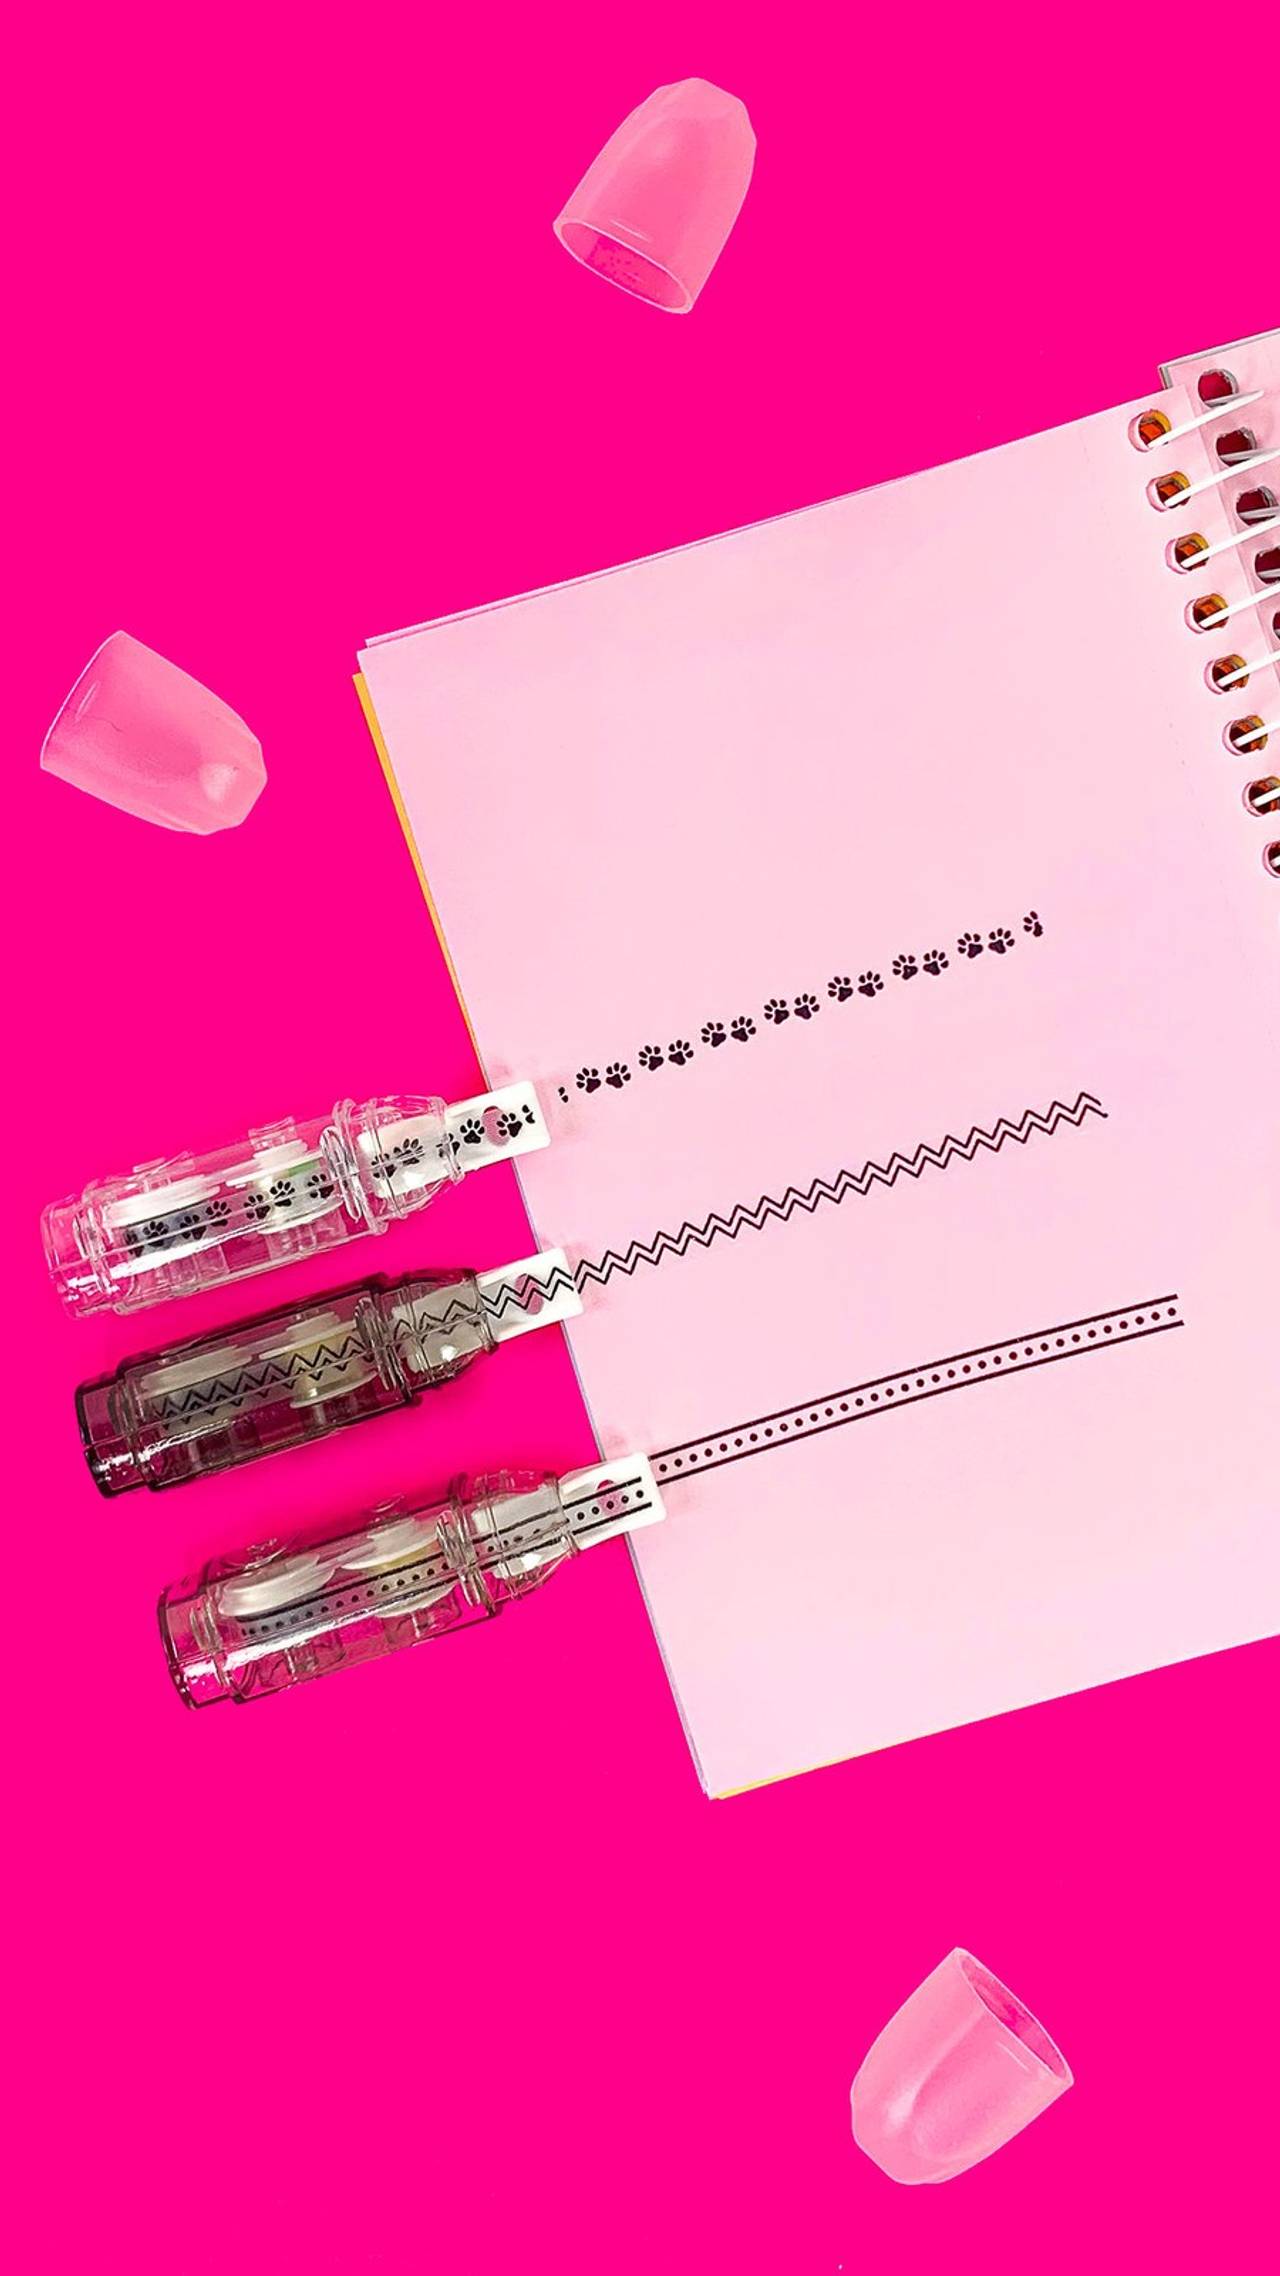 Papel rosa vibrante com linhas de fita adesiva decorativa e tampas de caneta